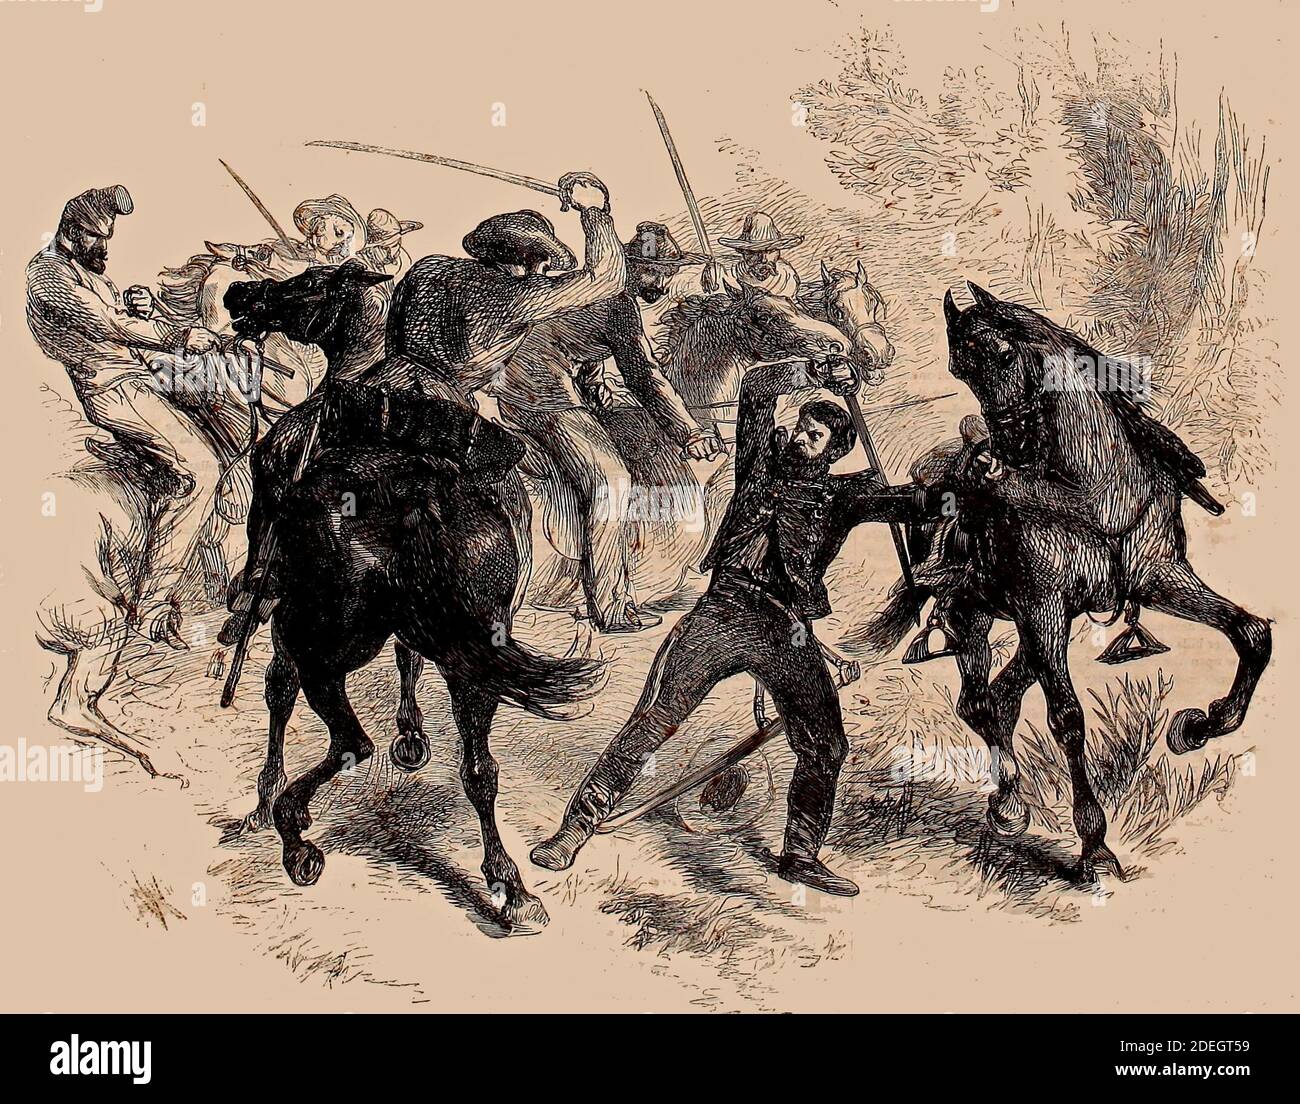 Der Bürgerkrieg in Amerika - Eroberung eines Federal Dragoon von Guerilla Horseman von Virginia, 1861 Stockfoto